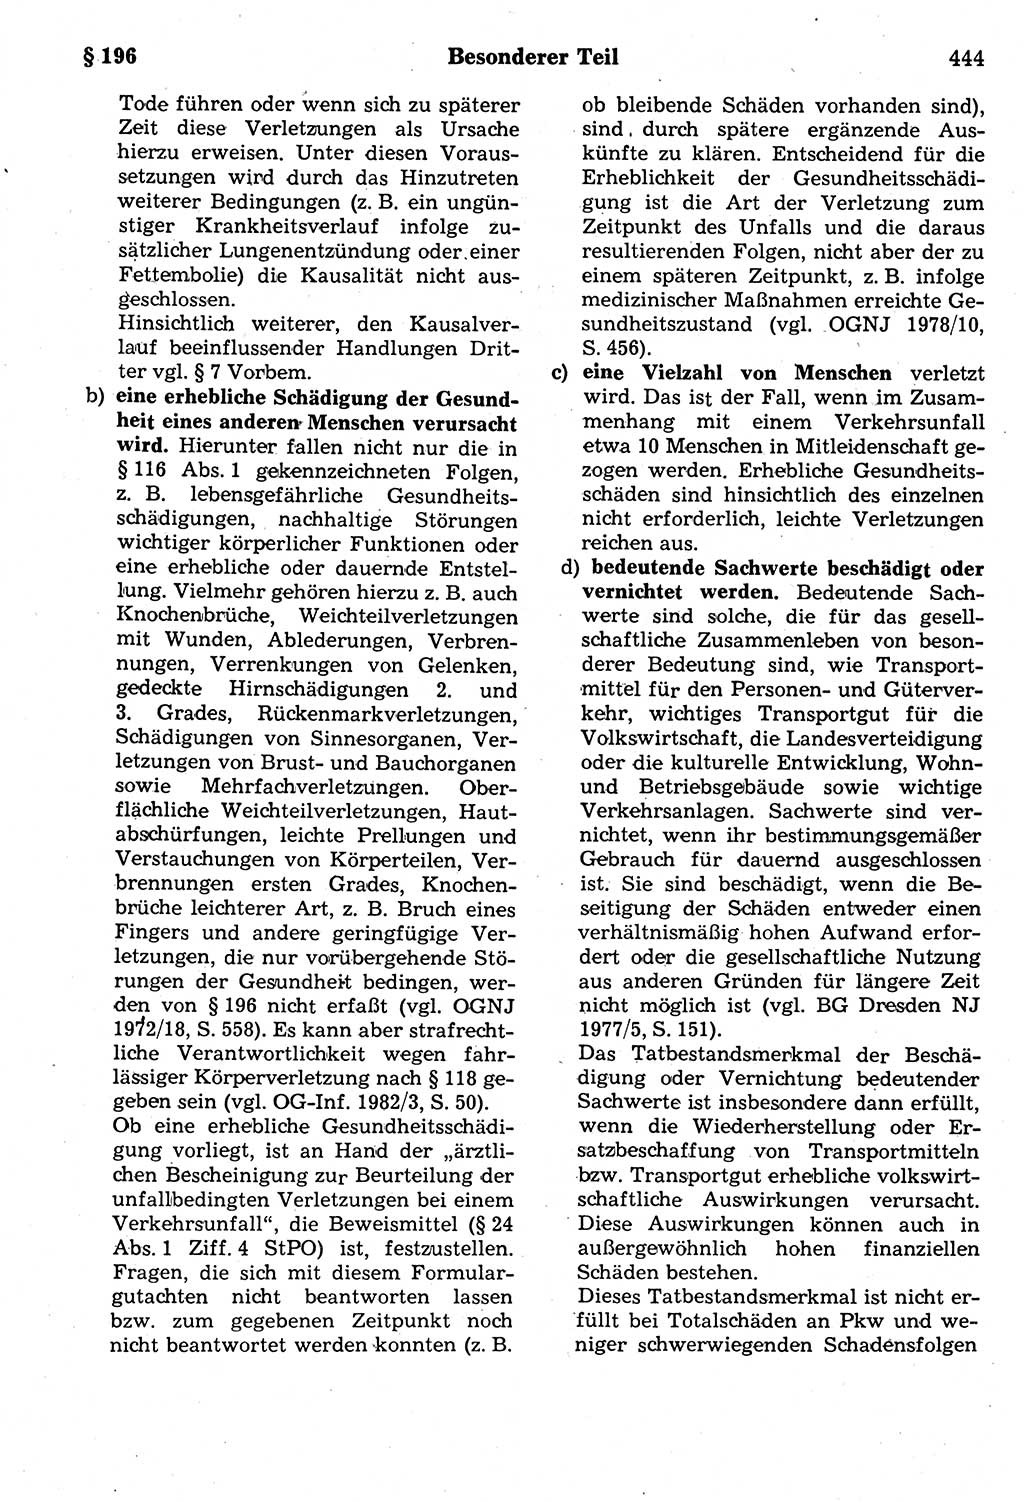 Strafrecht der Deutschen Demokratischen Republik (DDR), Kommentar zum Strafgesetzbuch (StGB) 1987, Seite 444 (Strafr. DDR Komm. StGB 1987, S. 444)